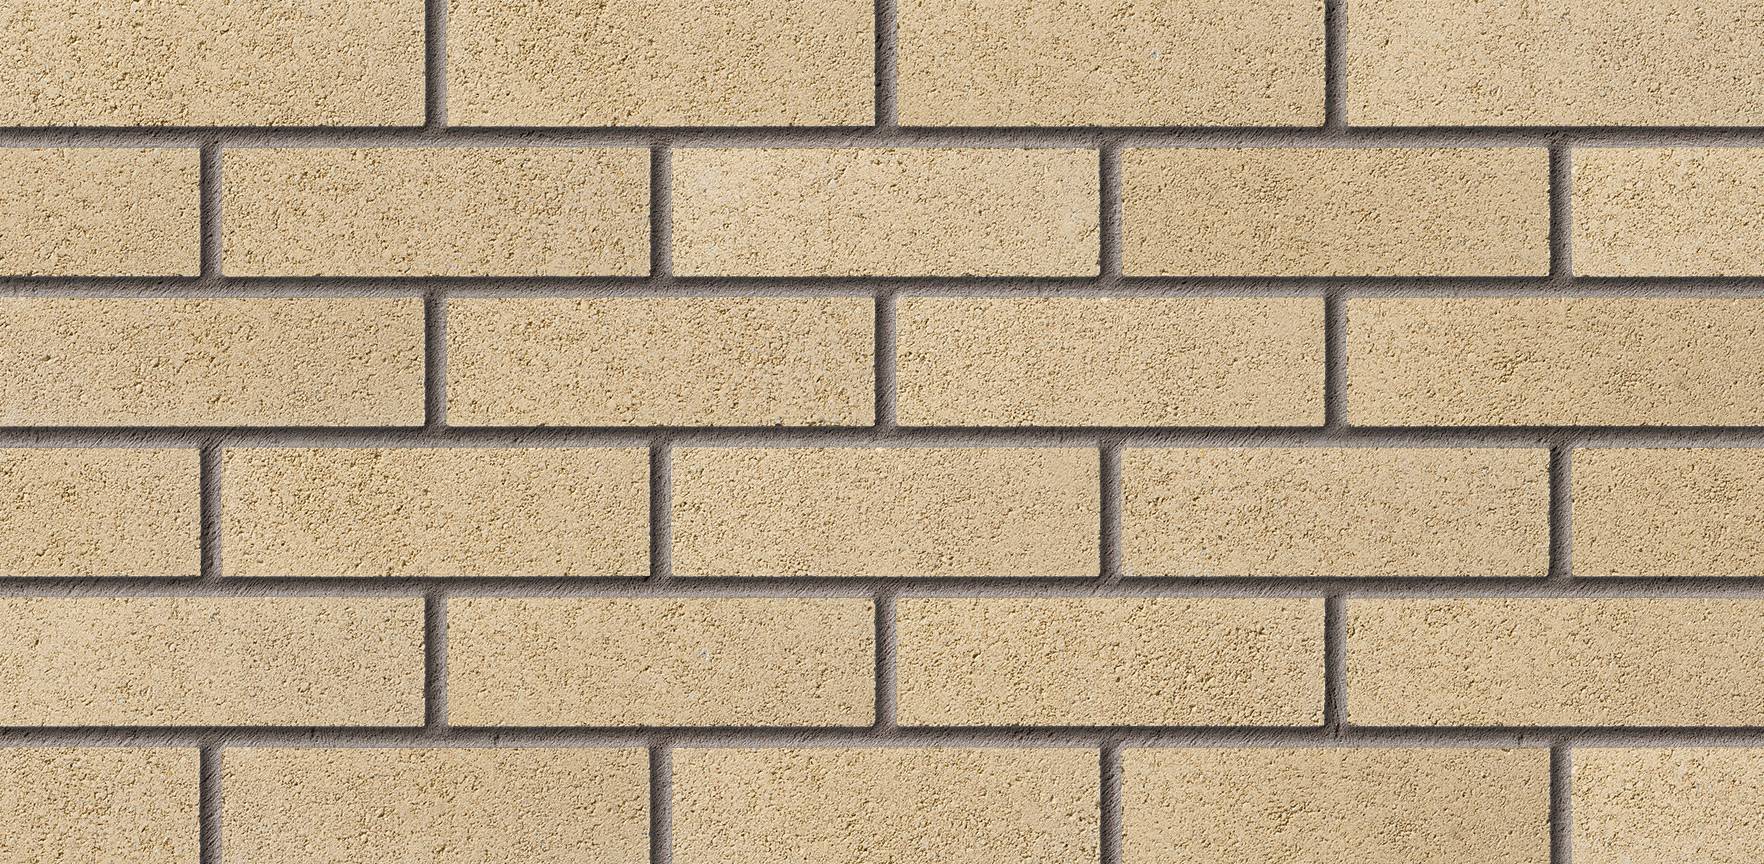 Farnham Cream Facing Brick